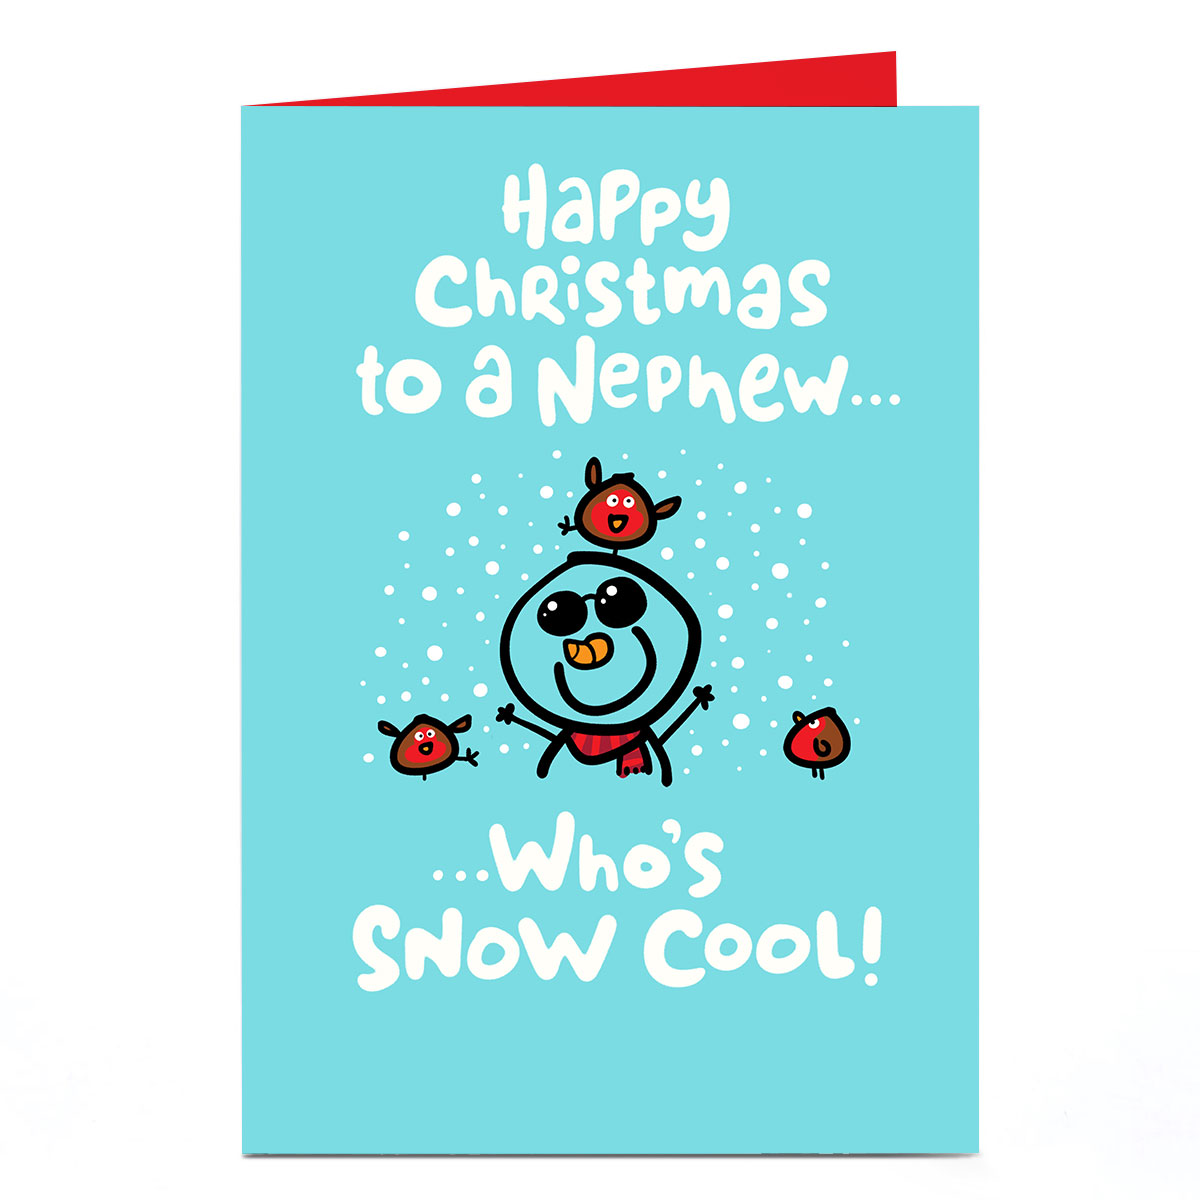 Personalised Fruitloops Christmas Card - Nephew Snow Cool